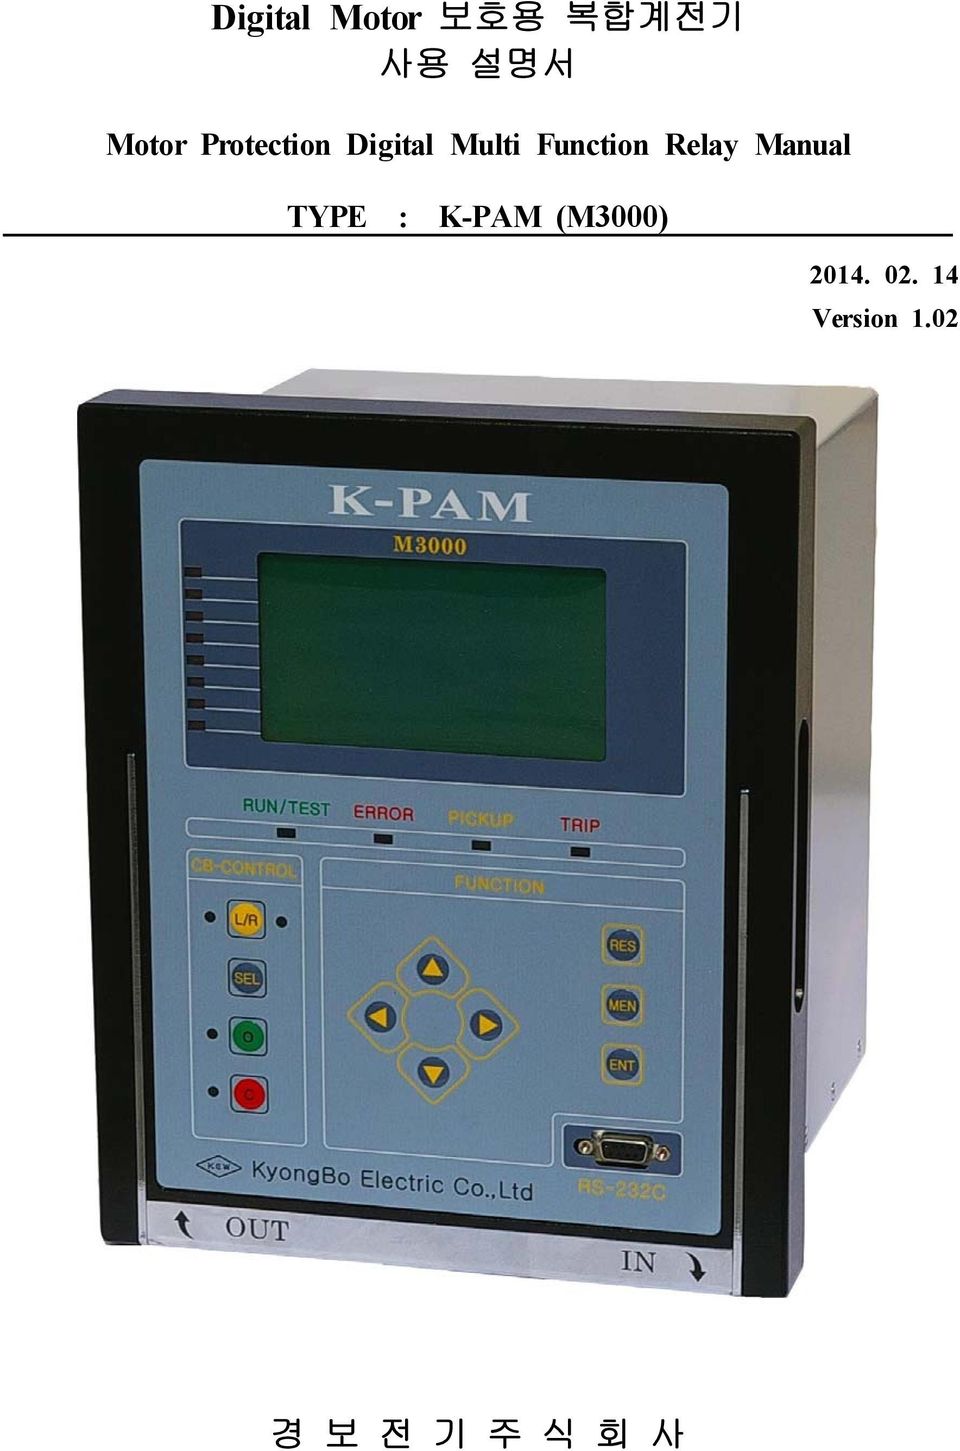 Relay Manual TYPE : K-PAM (M3000)